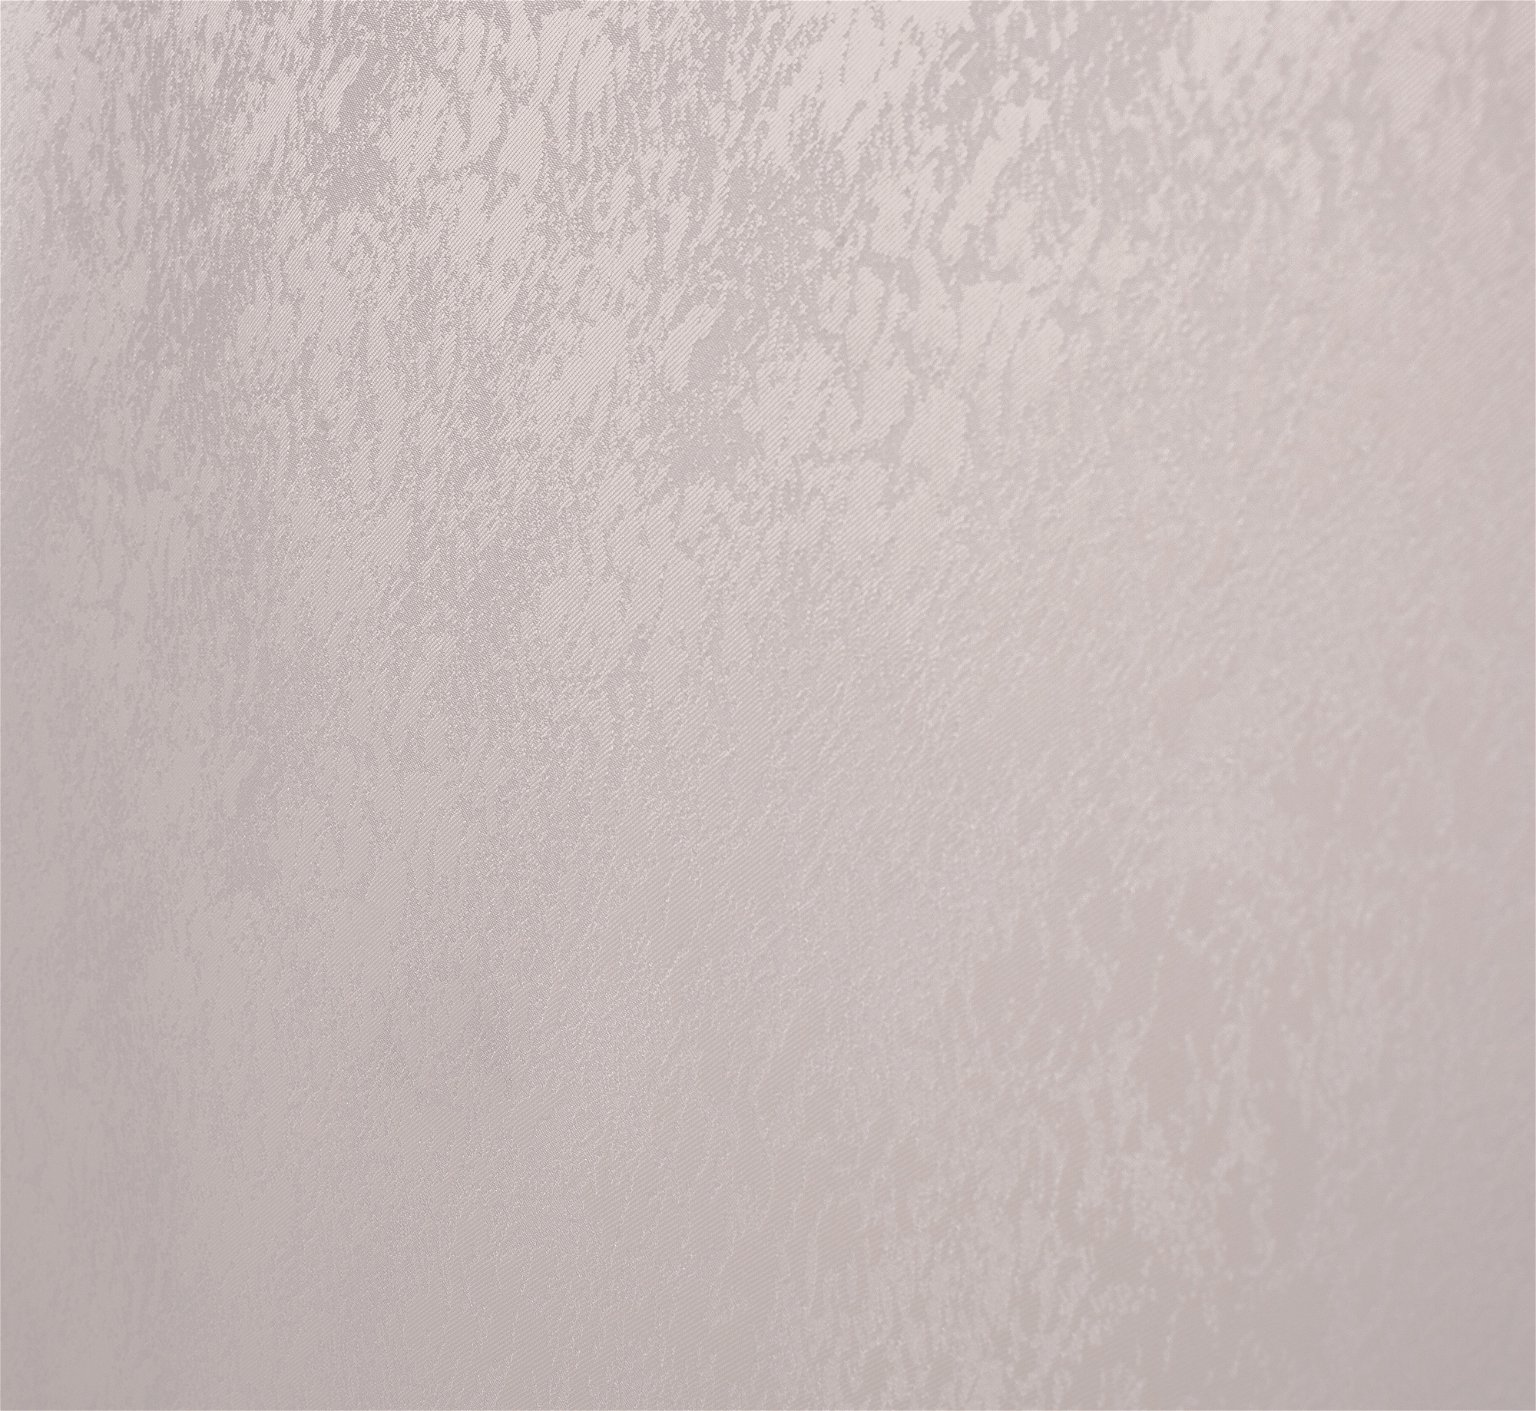 Klasikinė ritininė užuolaida LONDON, kreminės sp., 200 x 170 cm, 100 % poliesteris - 2